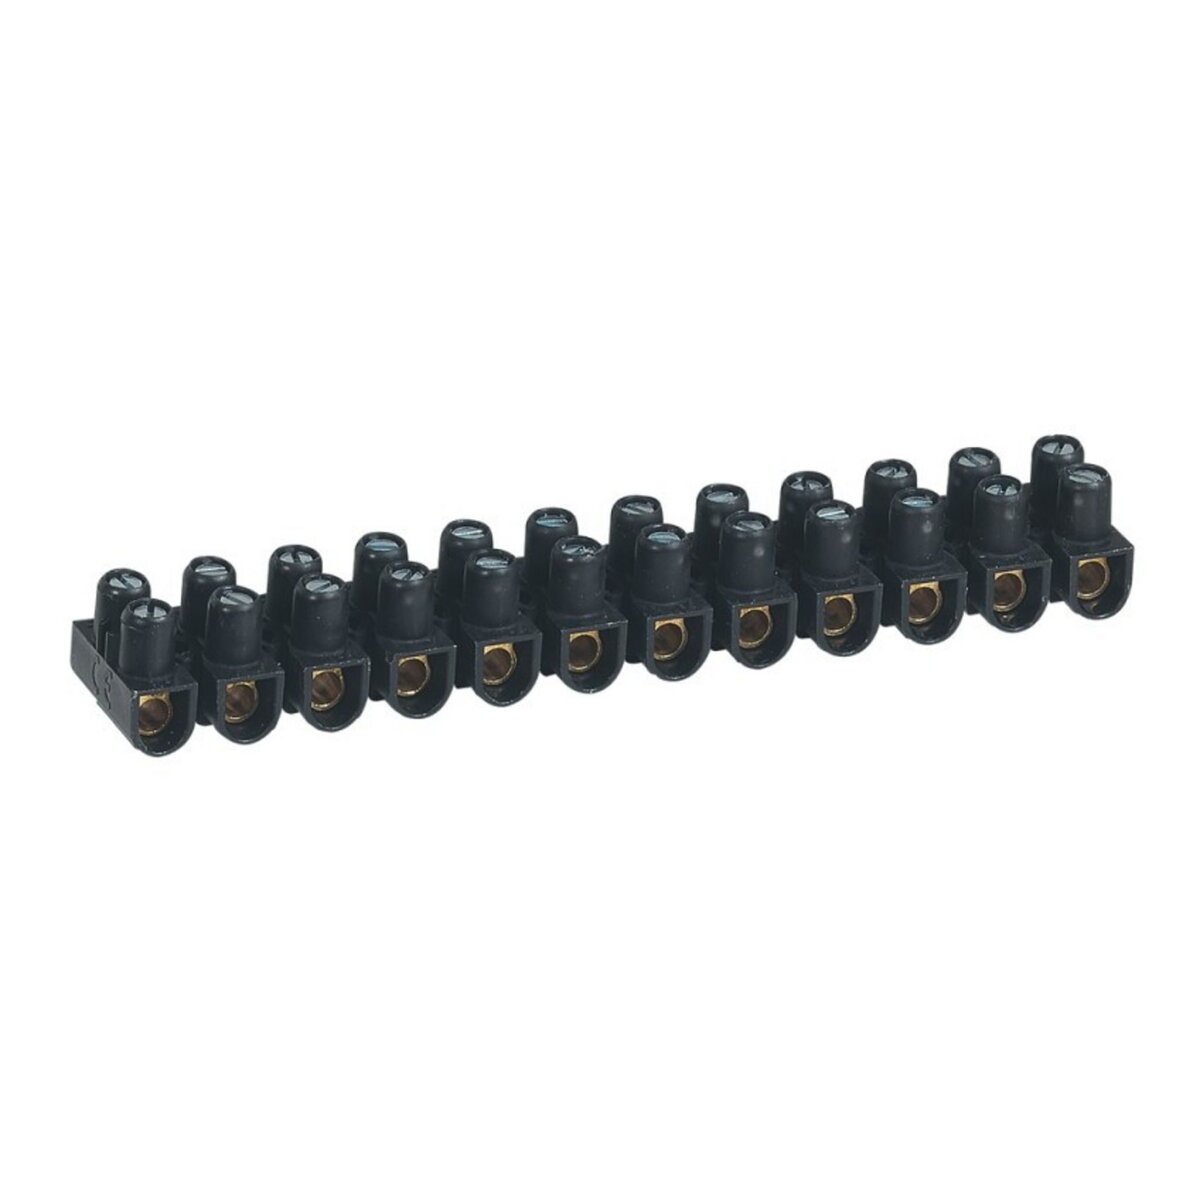 Legrand Barrette de connexion nylbloc - noir - 10 mm2 - lot de 10 -